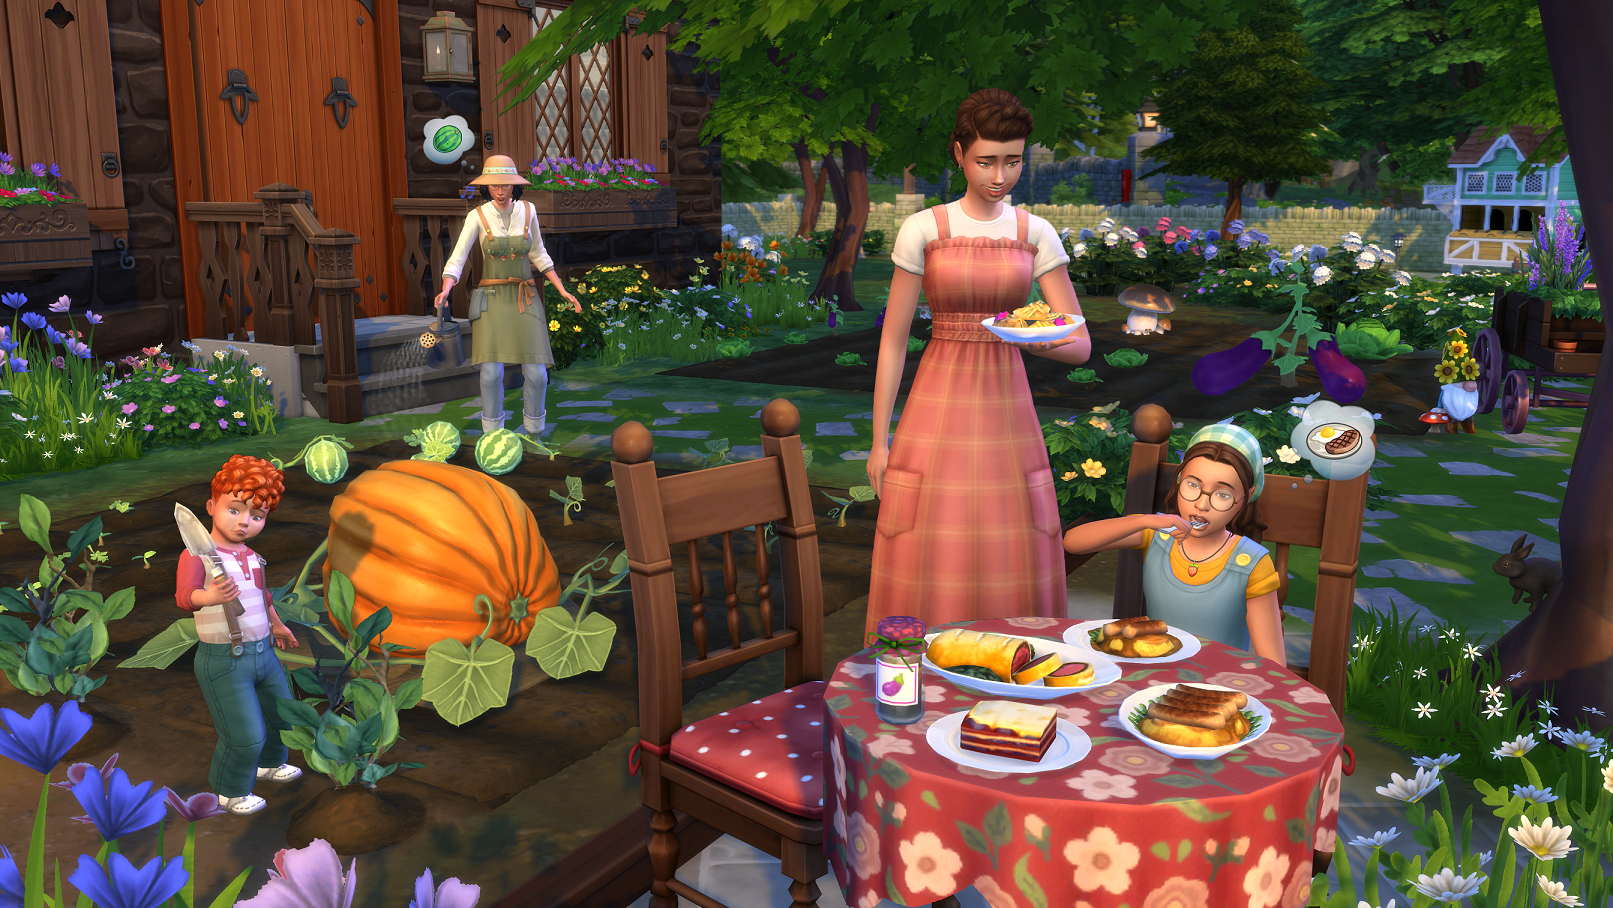 PC - The Sims 4 - Život na venkově 